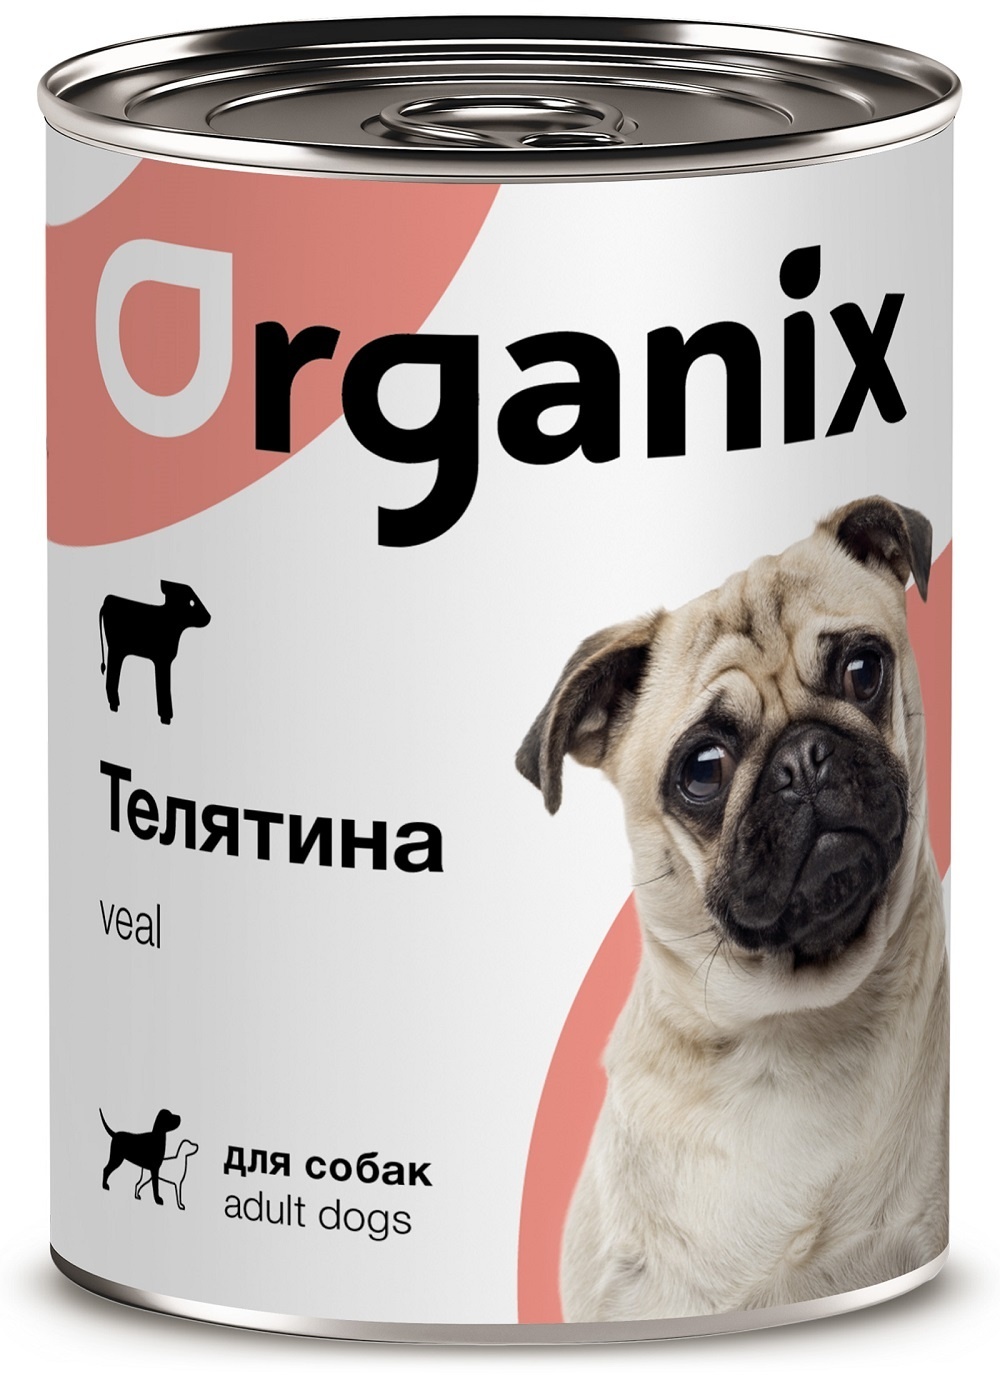 Organix консервы Organix консервы с телятиной для собак (100 г) organix консервы organix консервы с ягненком для взрослых собак банка 410 г